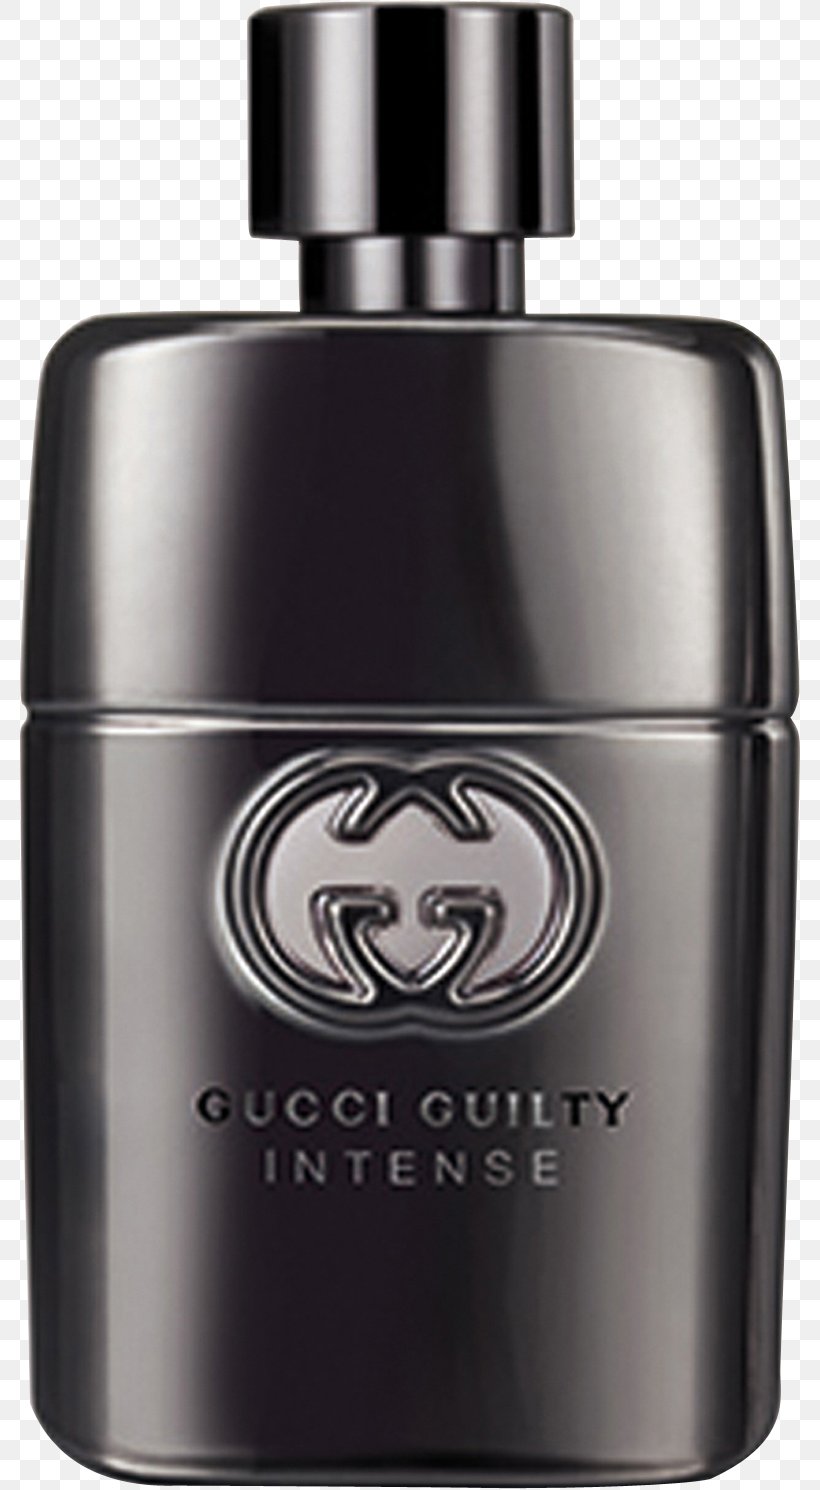 Gucci Guilty Intense Eau De Parfum Spray Perfume Gucci Guilty Intense Eau De Toilette Spray For Men, 3.0 Oz, Orange, PNG, 782x1490px, Gucci, Cosmetics, Deodorant, Eau De Cologne, Eau De Toilette Download Free